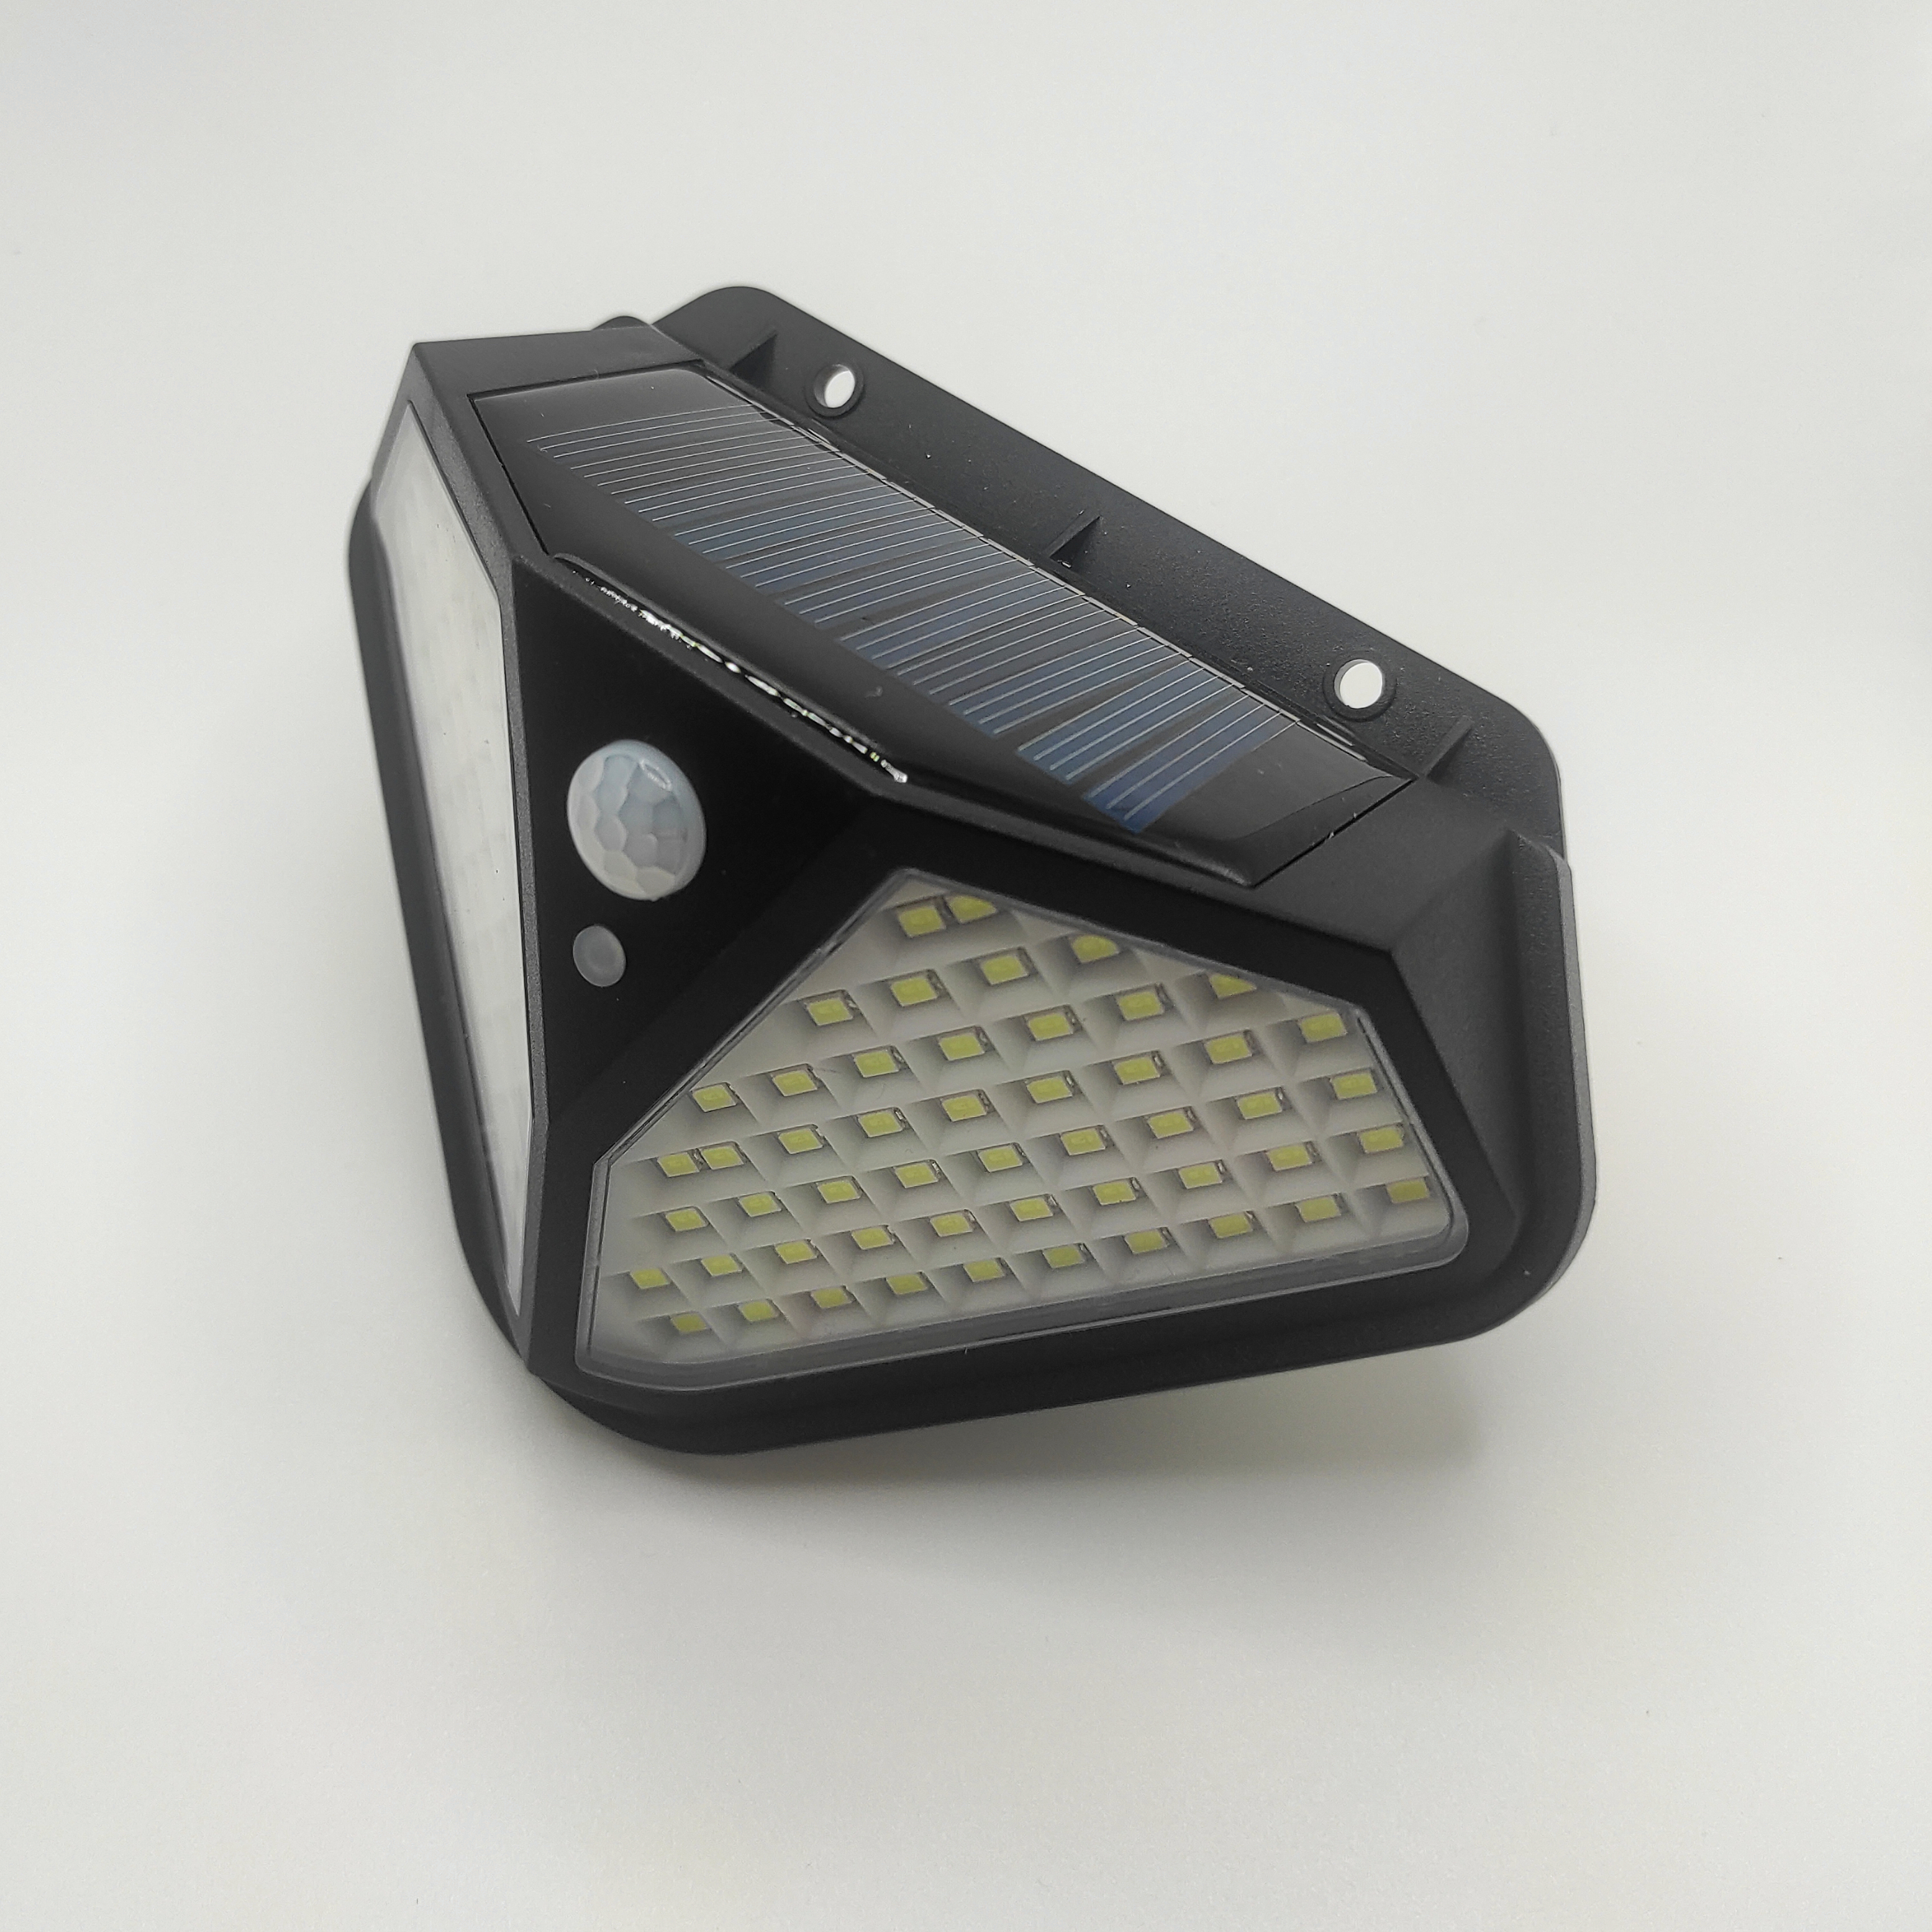 Купить светильник yg-1410 беспроводной на солнечной батарее с датчиком движения (3 режима работы) | КилоВатт